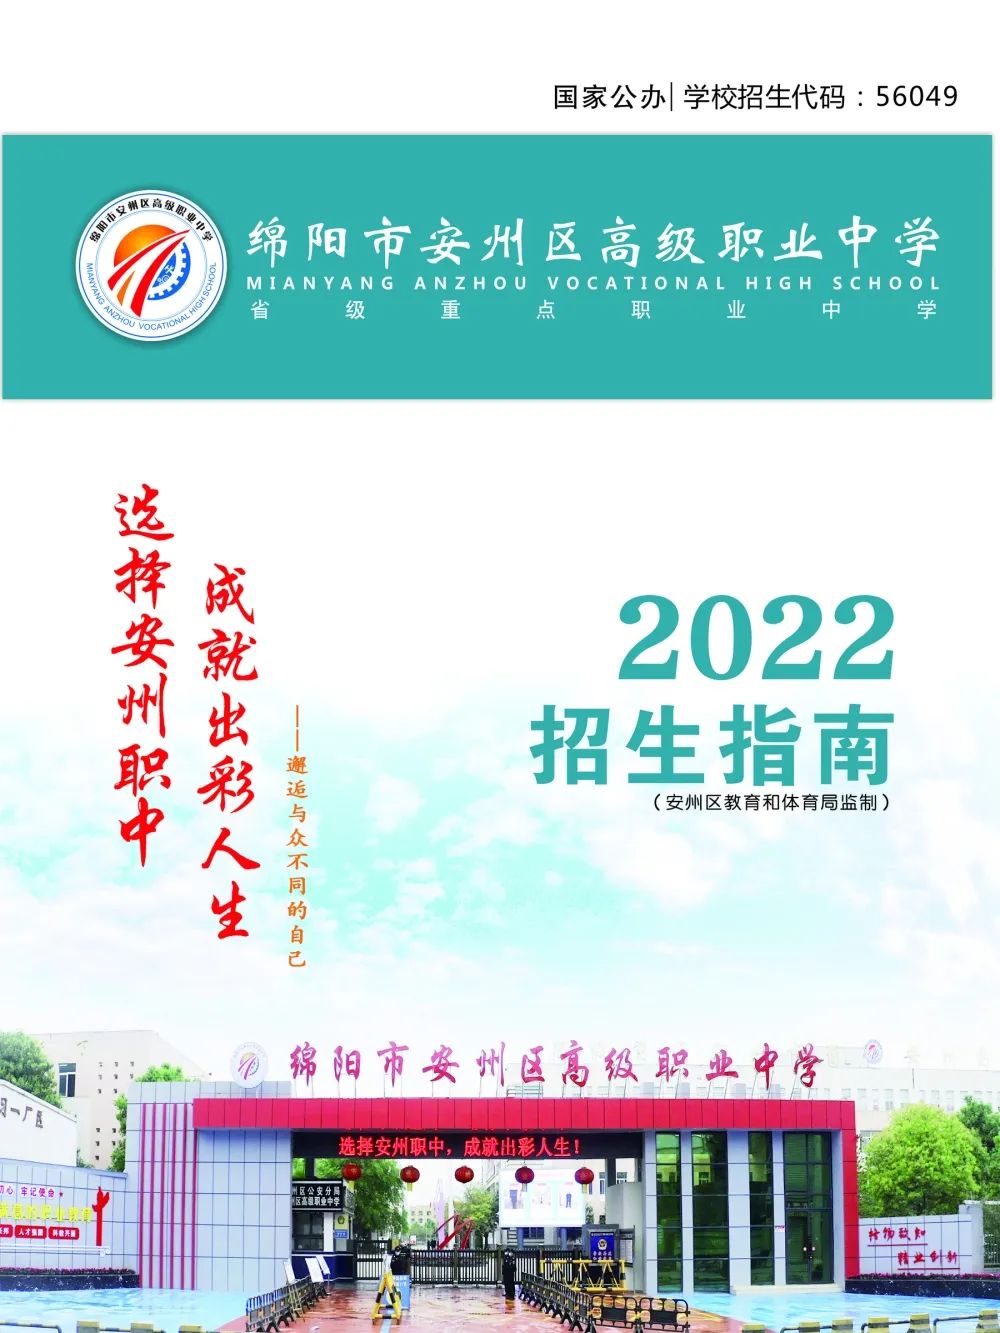 绵阳市安州区高级职业中学2022年招生简章